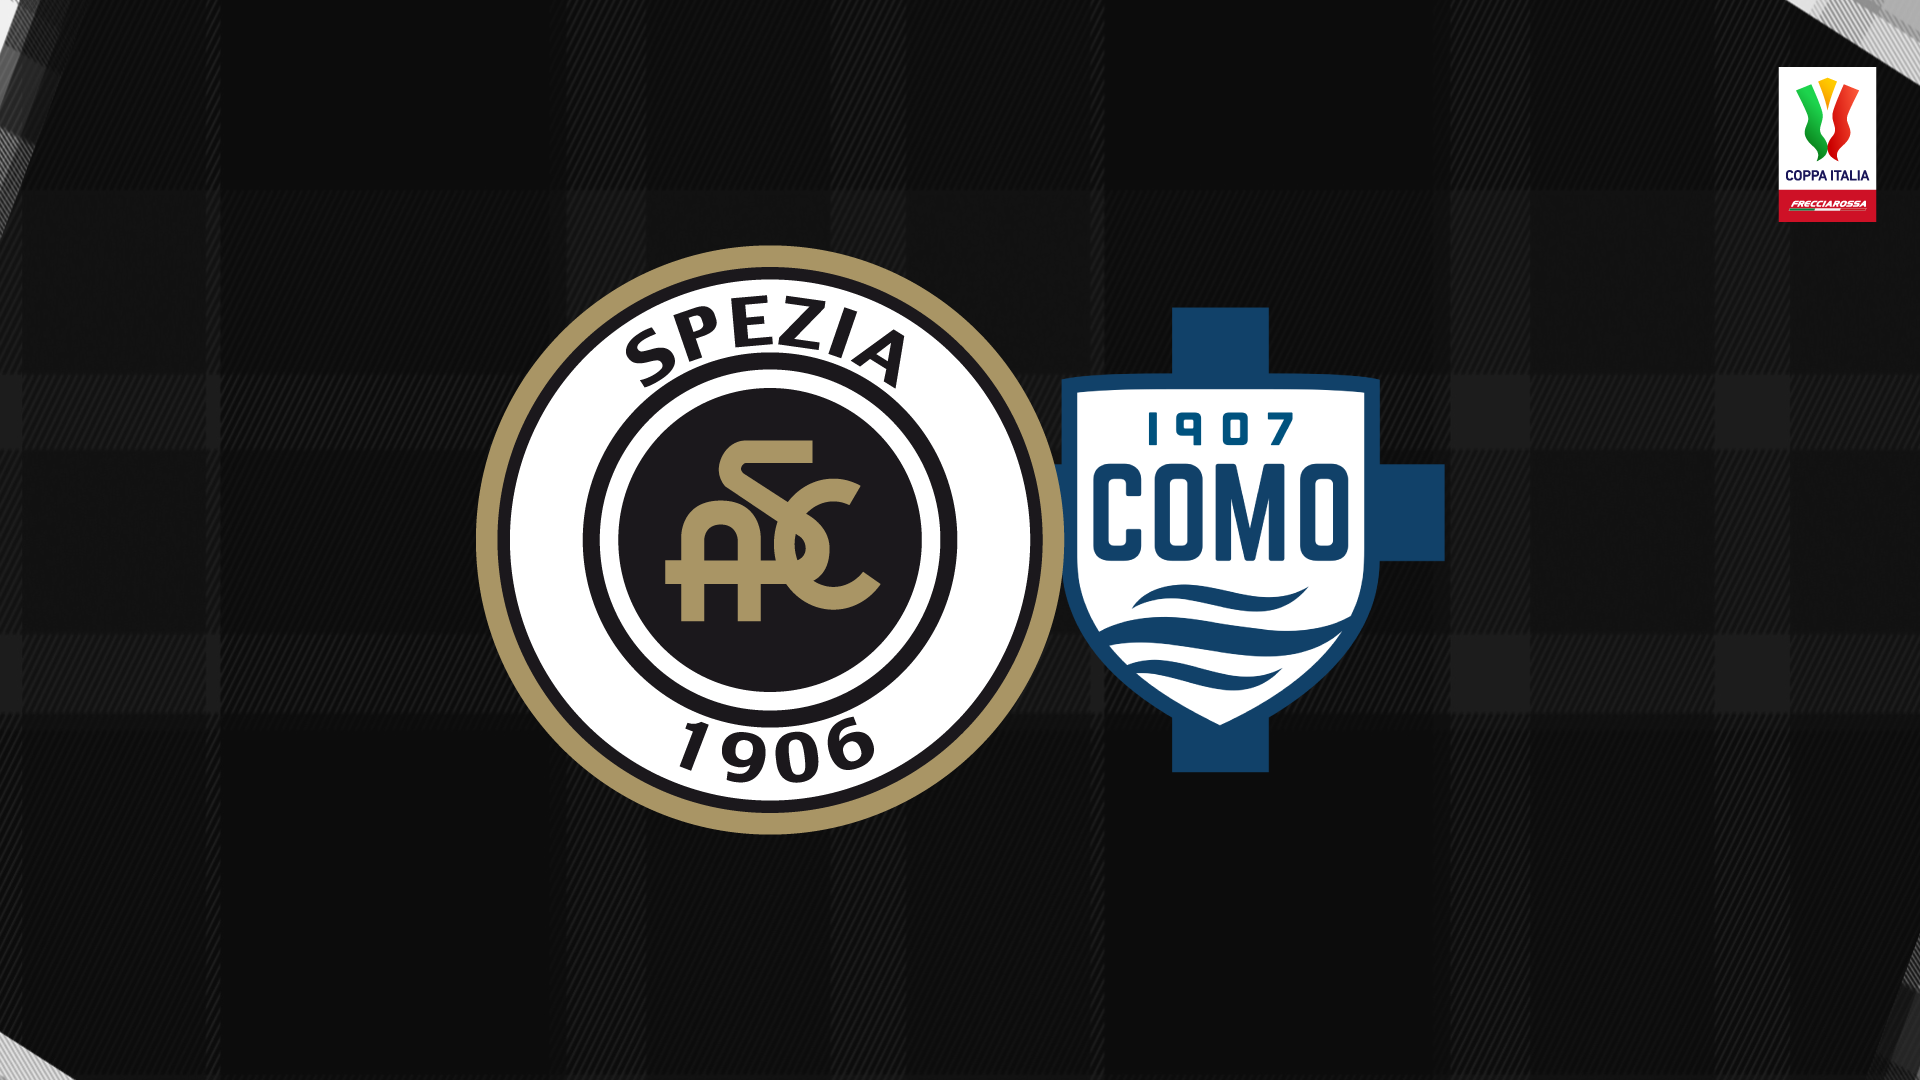 Coppa Italia 22/23: Spezia-Como 5-1